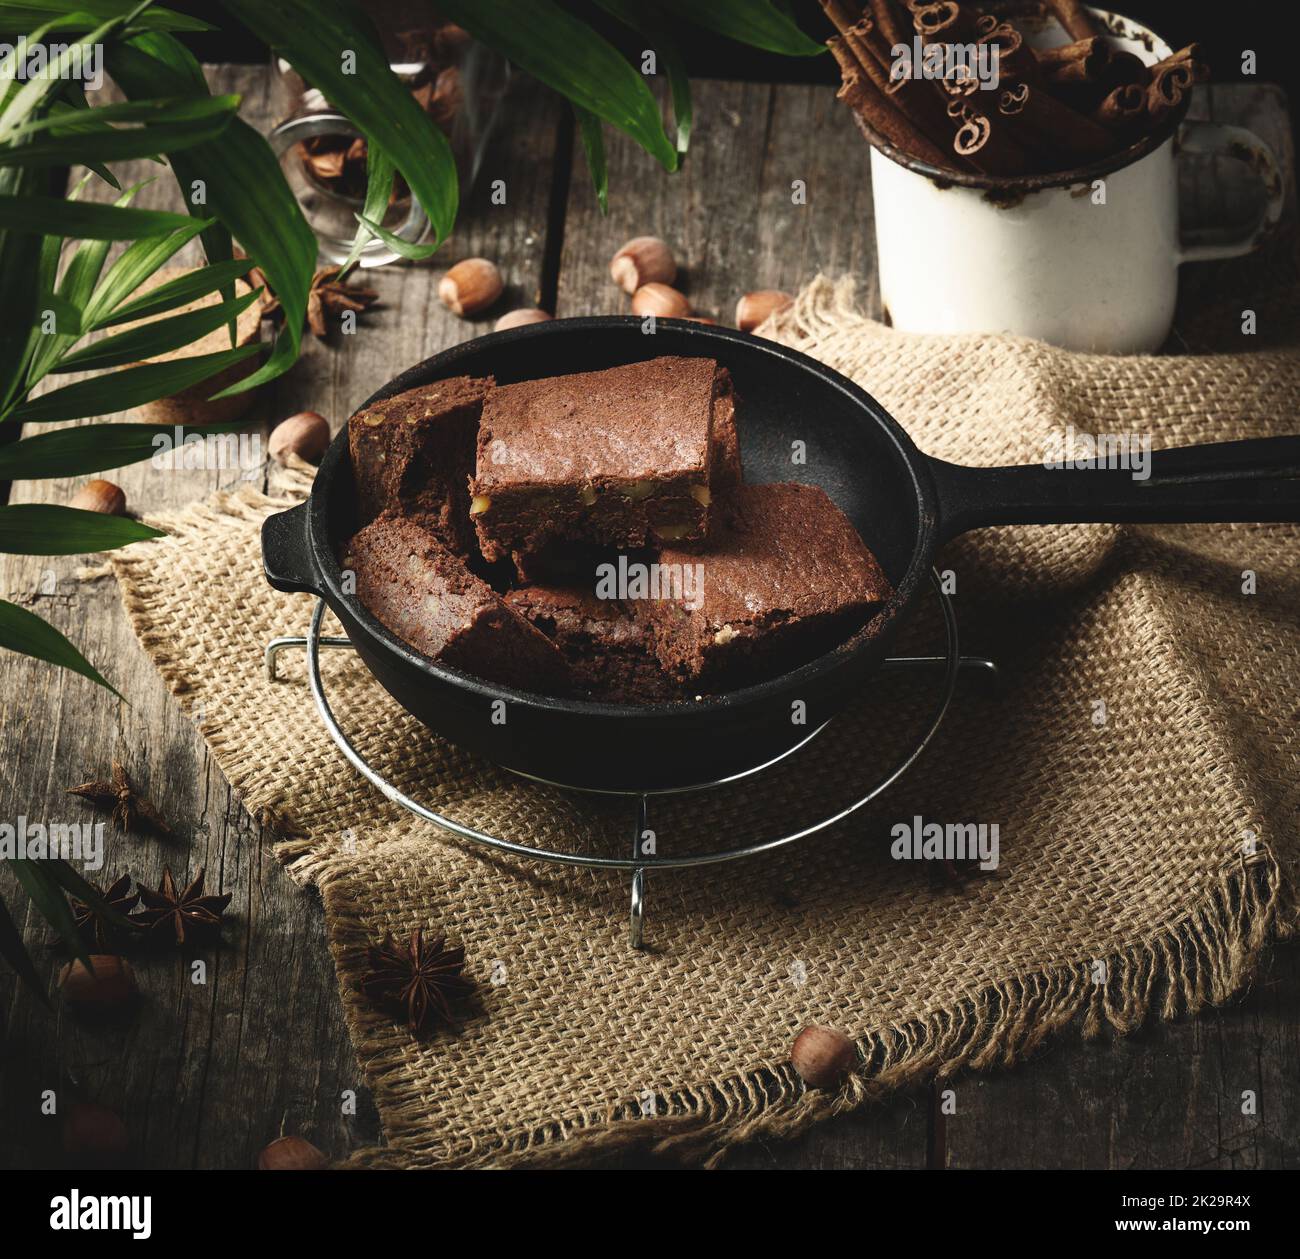 morceaux de gâteau au chocolat au brownie avec noix dans une poêle en métal noir sur une table en bois, vue du dessus Banque D'Images